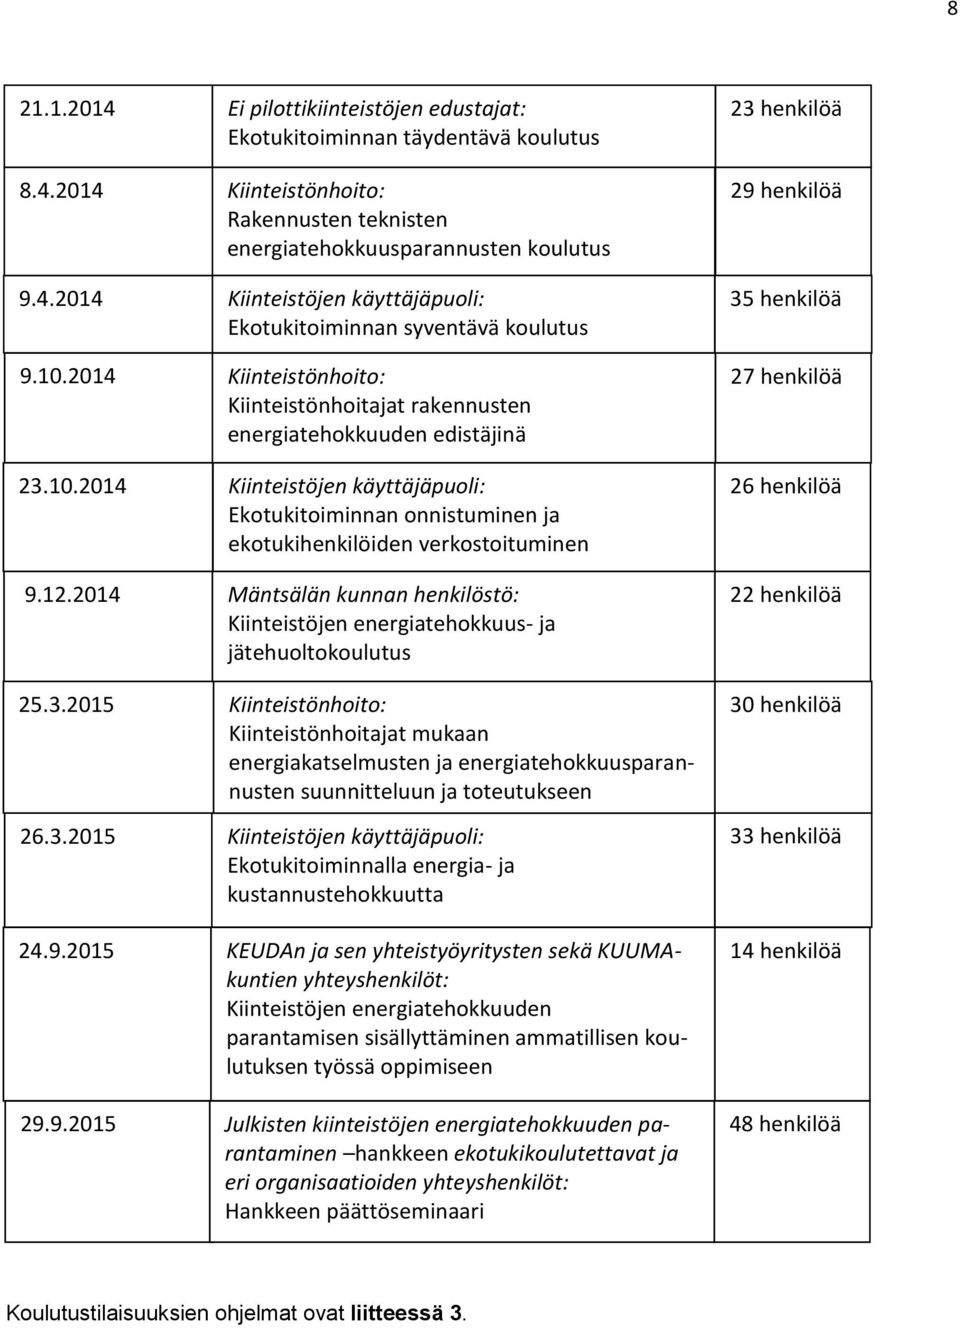 12.2014 Mäntsälän kunnan henkilöstö: Kiinteistöjen energiatehokkuus- ja jätehuoltokoulutus 35